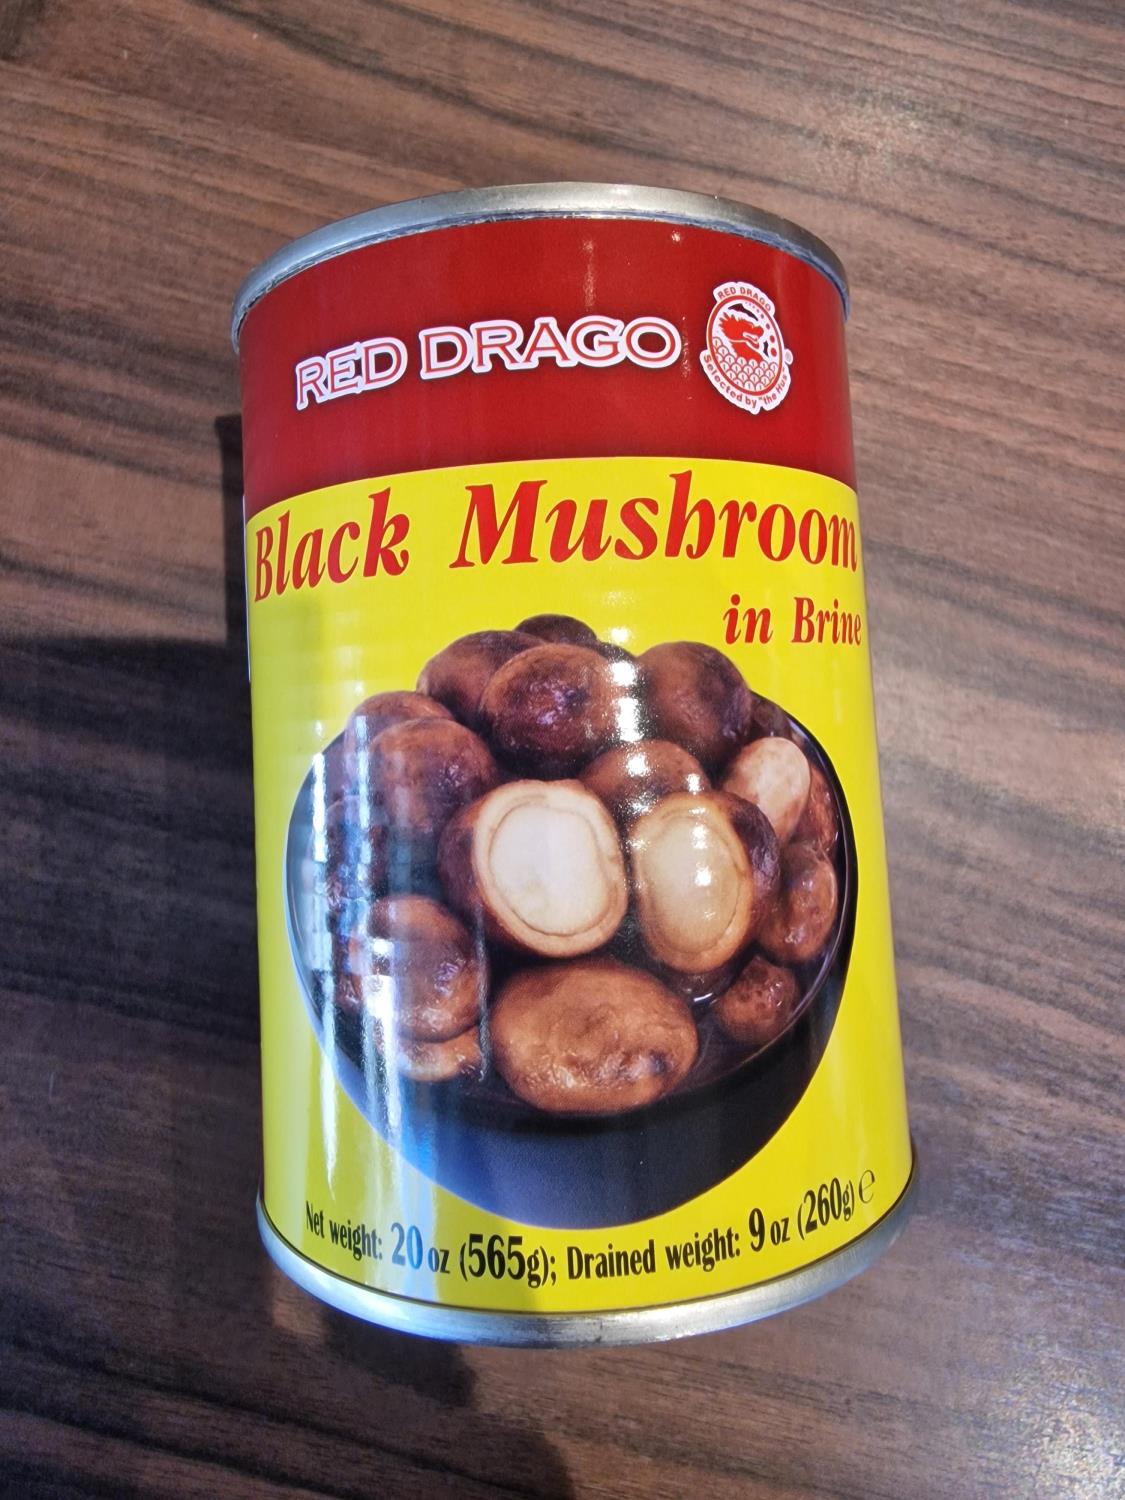 Black mushroom in brine